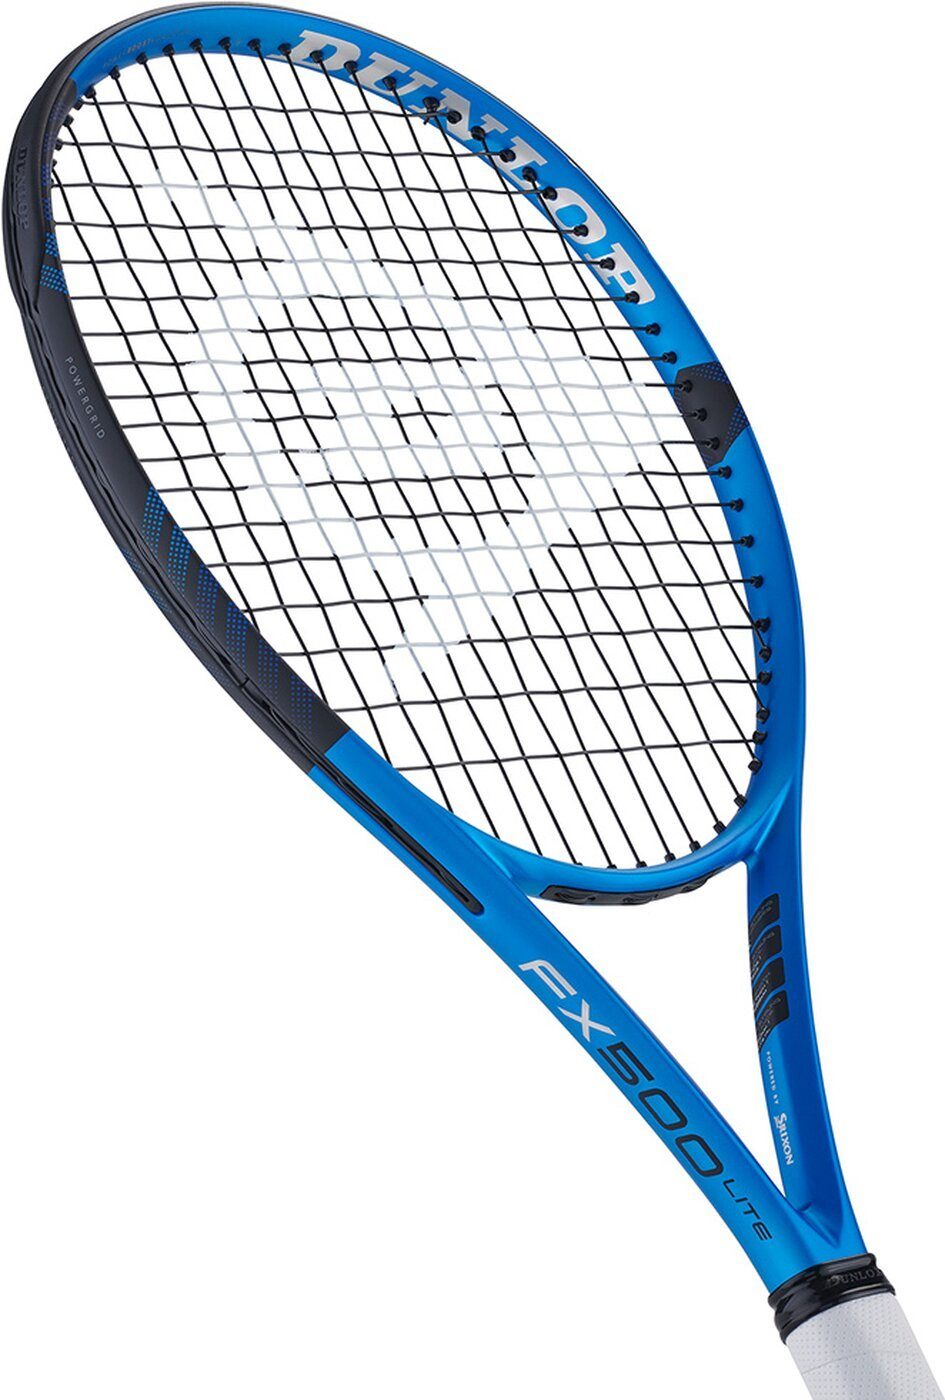 Tennisschläger FX500 Lite BLUE/BLACK Dunlop